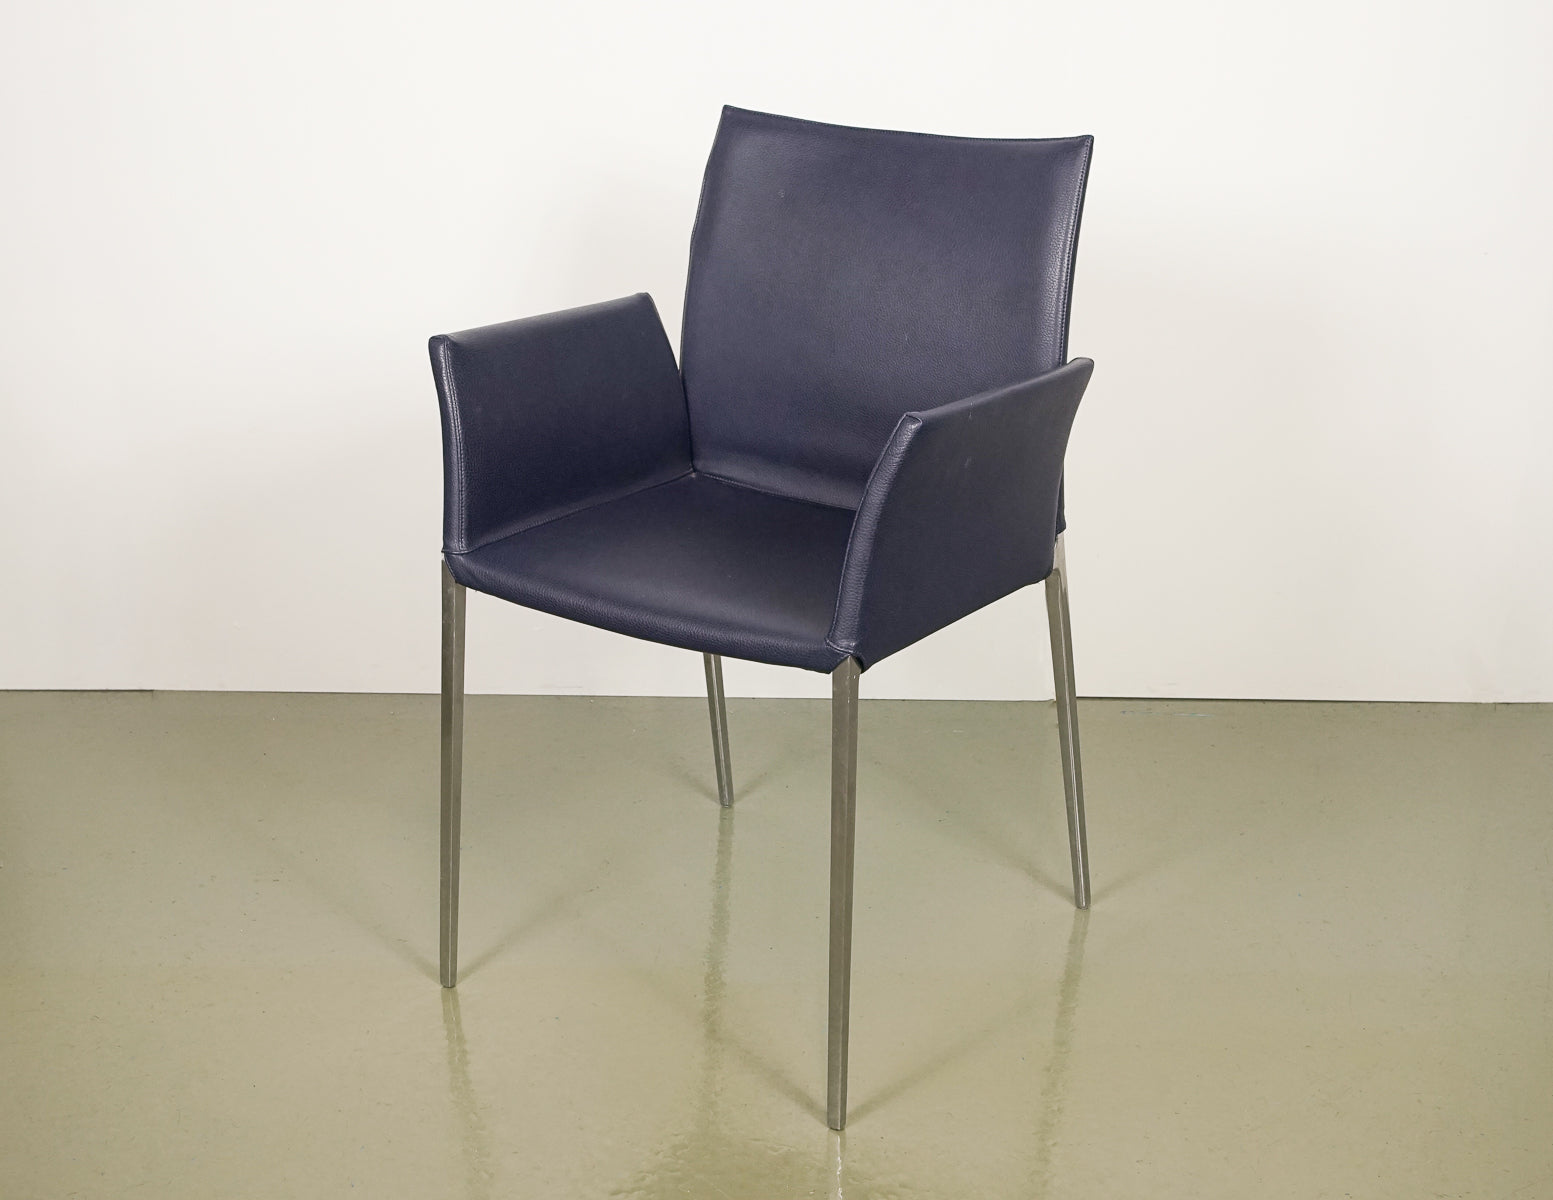 Zanotta Aluminium Chairs (4 units)